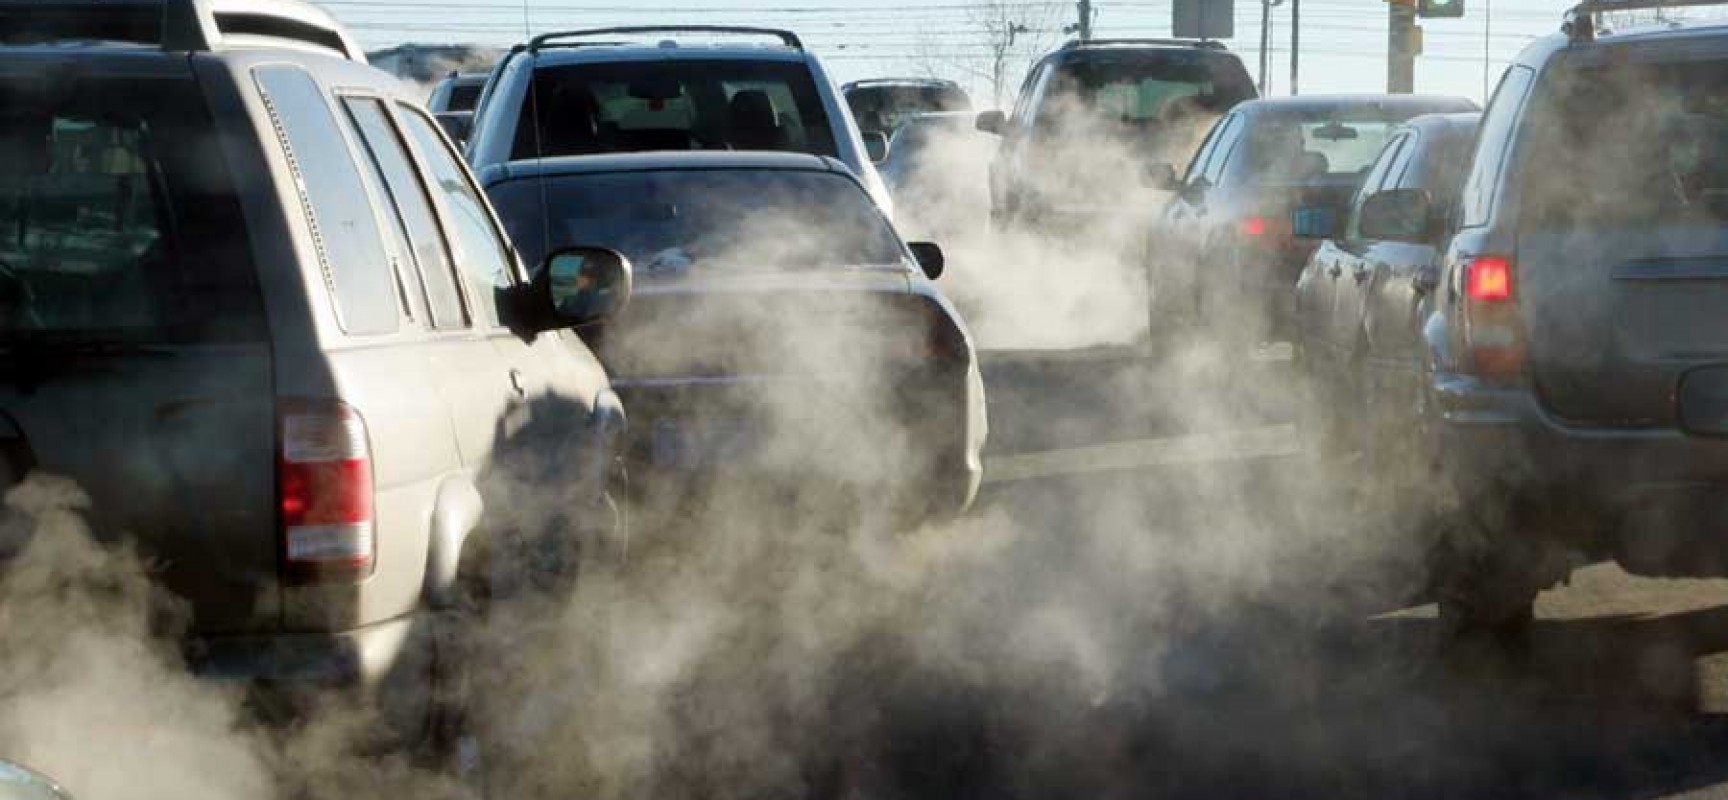 More information about "Δείτε τη ρύπανση από τα πετρελαιοκίνητα αυτοκίνητα στη γειτονιά σας"